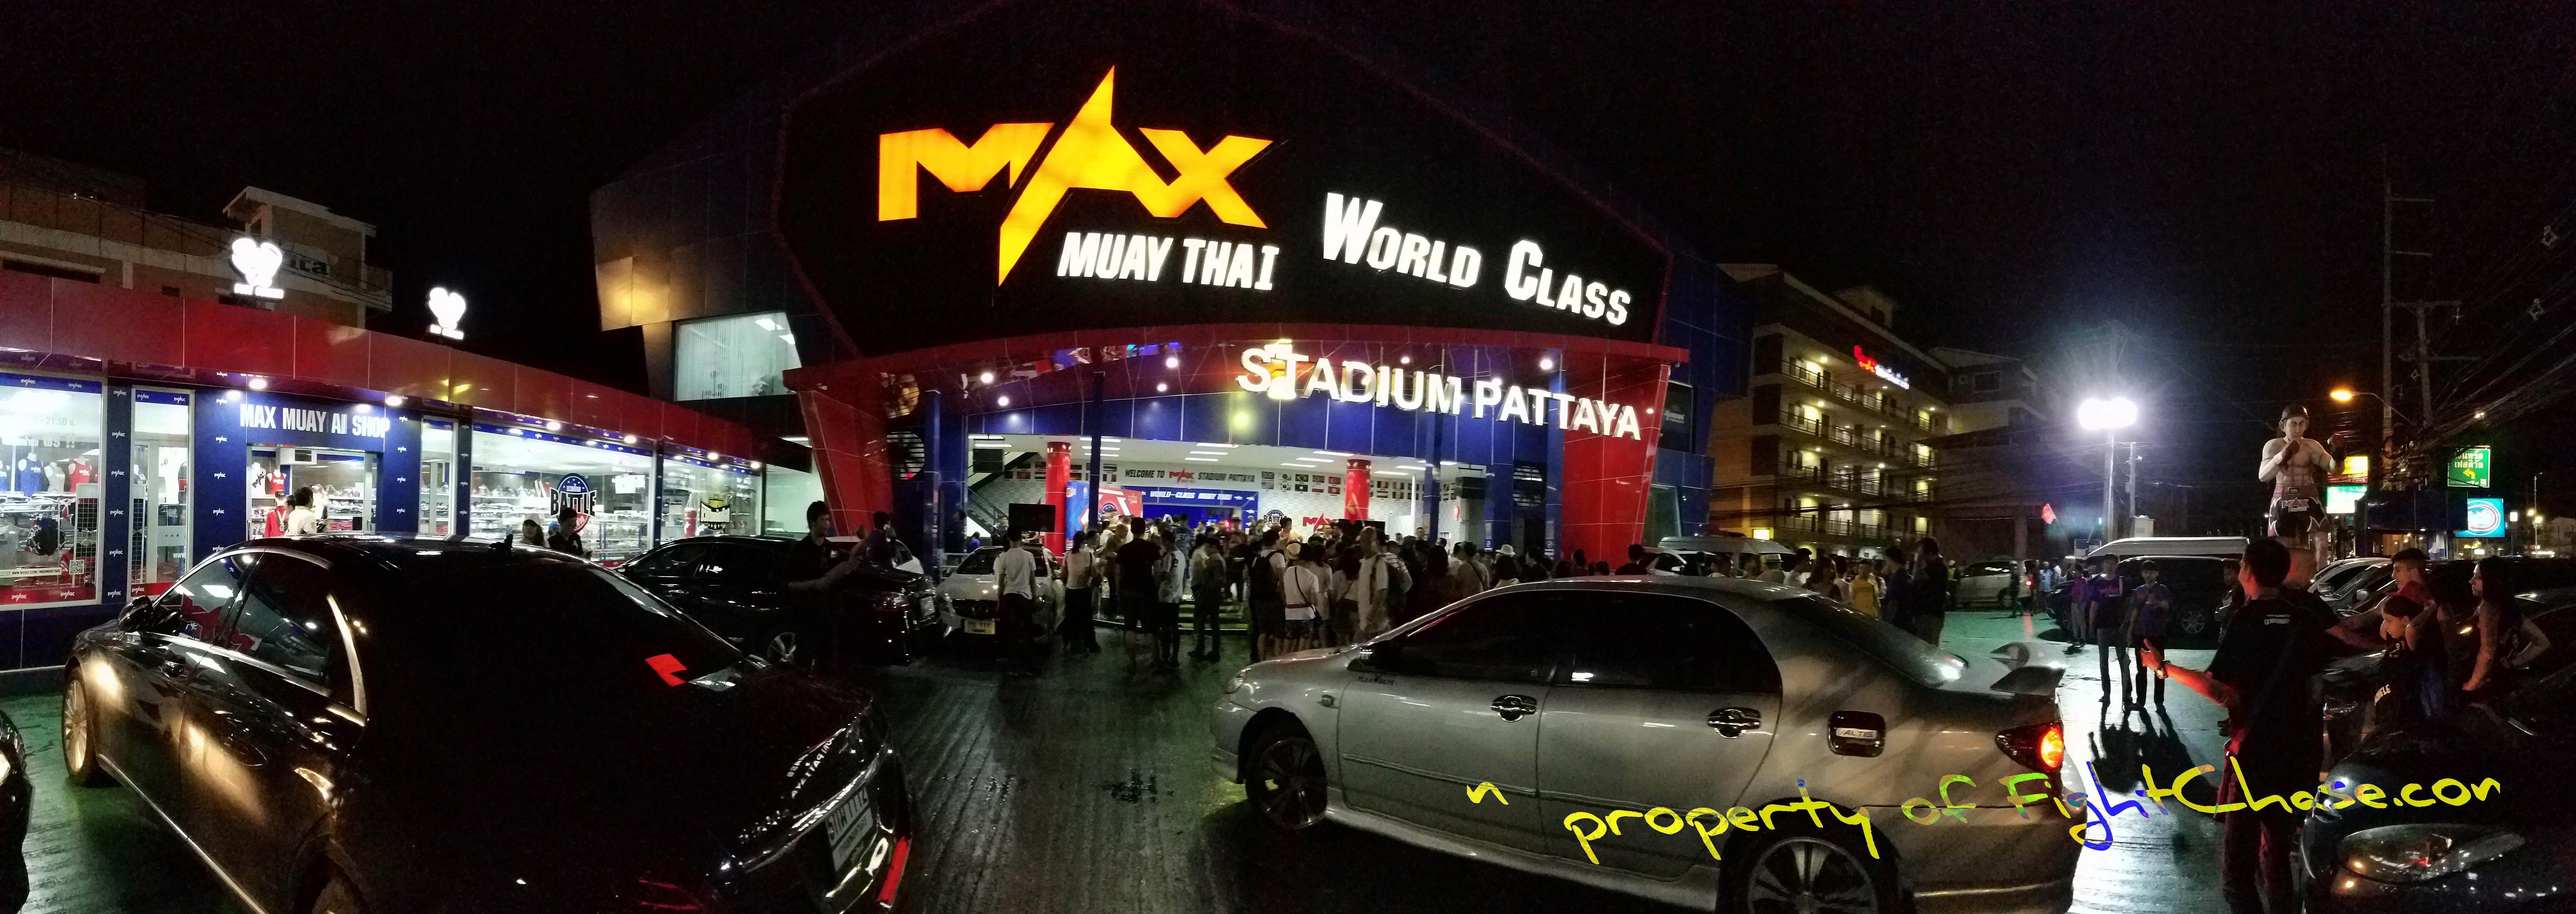 20170714 200235 - Max Muay Thai Stadium ,Pattaya Thailand